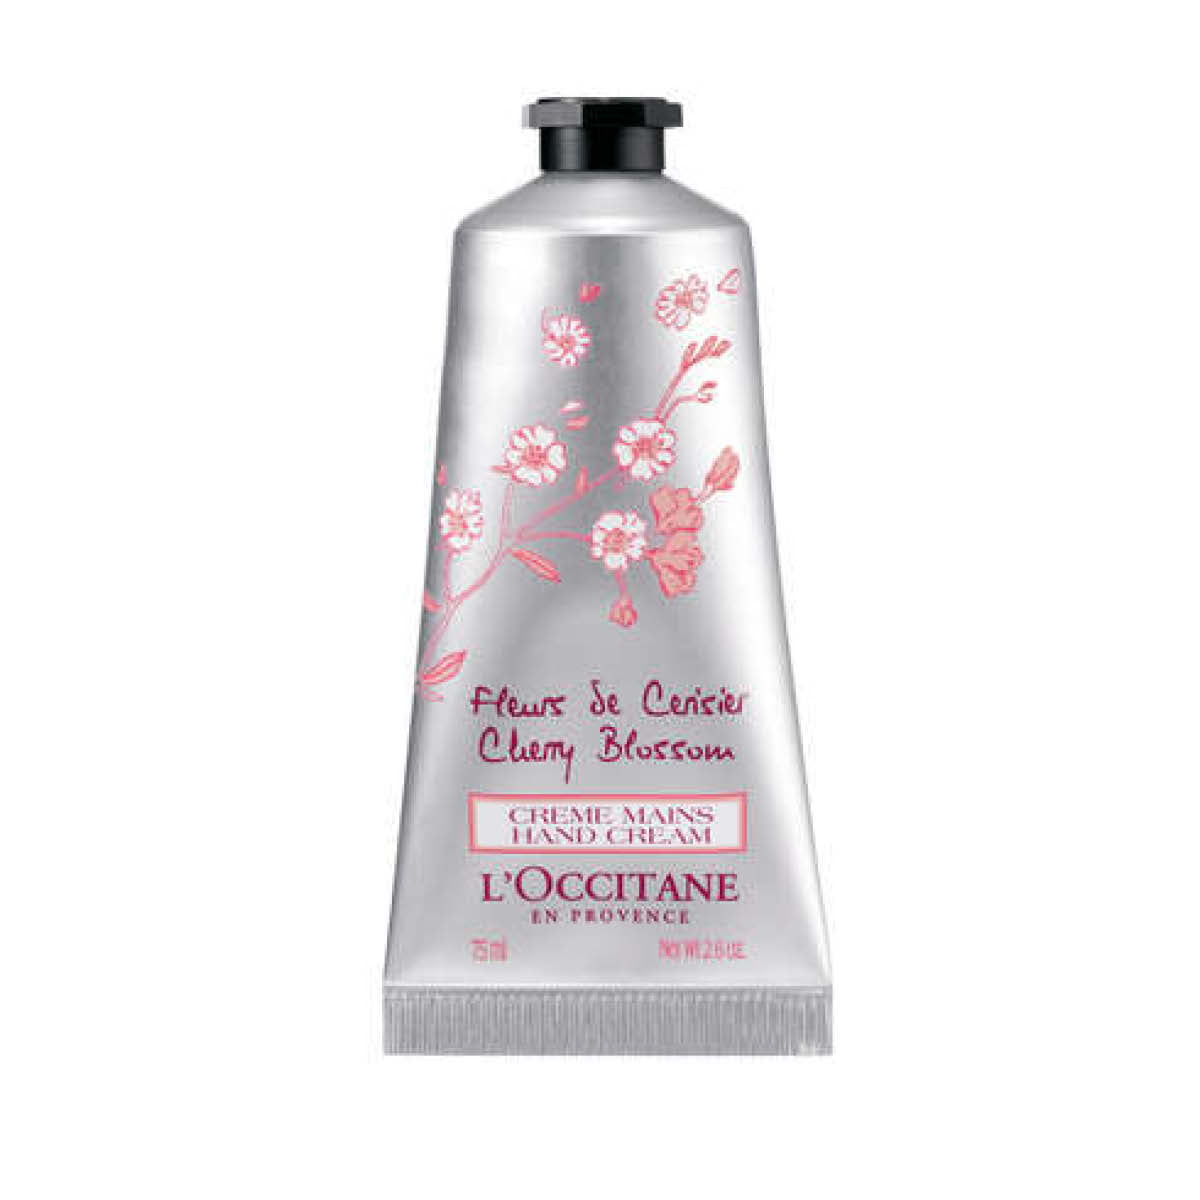 L'Occitane Cherry Blossom Petal-Soft Hand Cream.